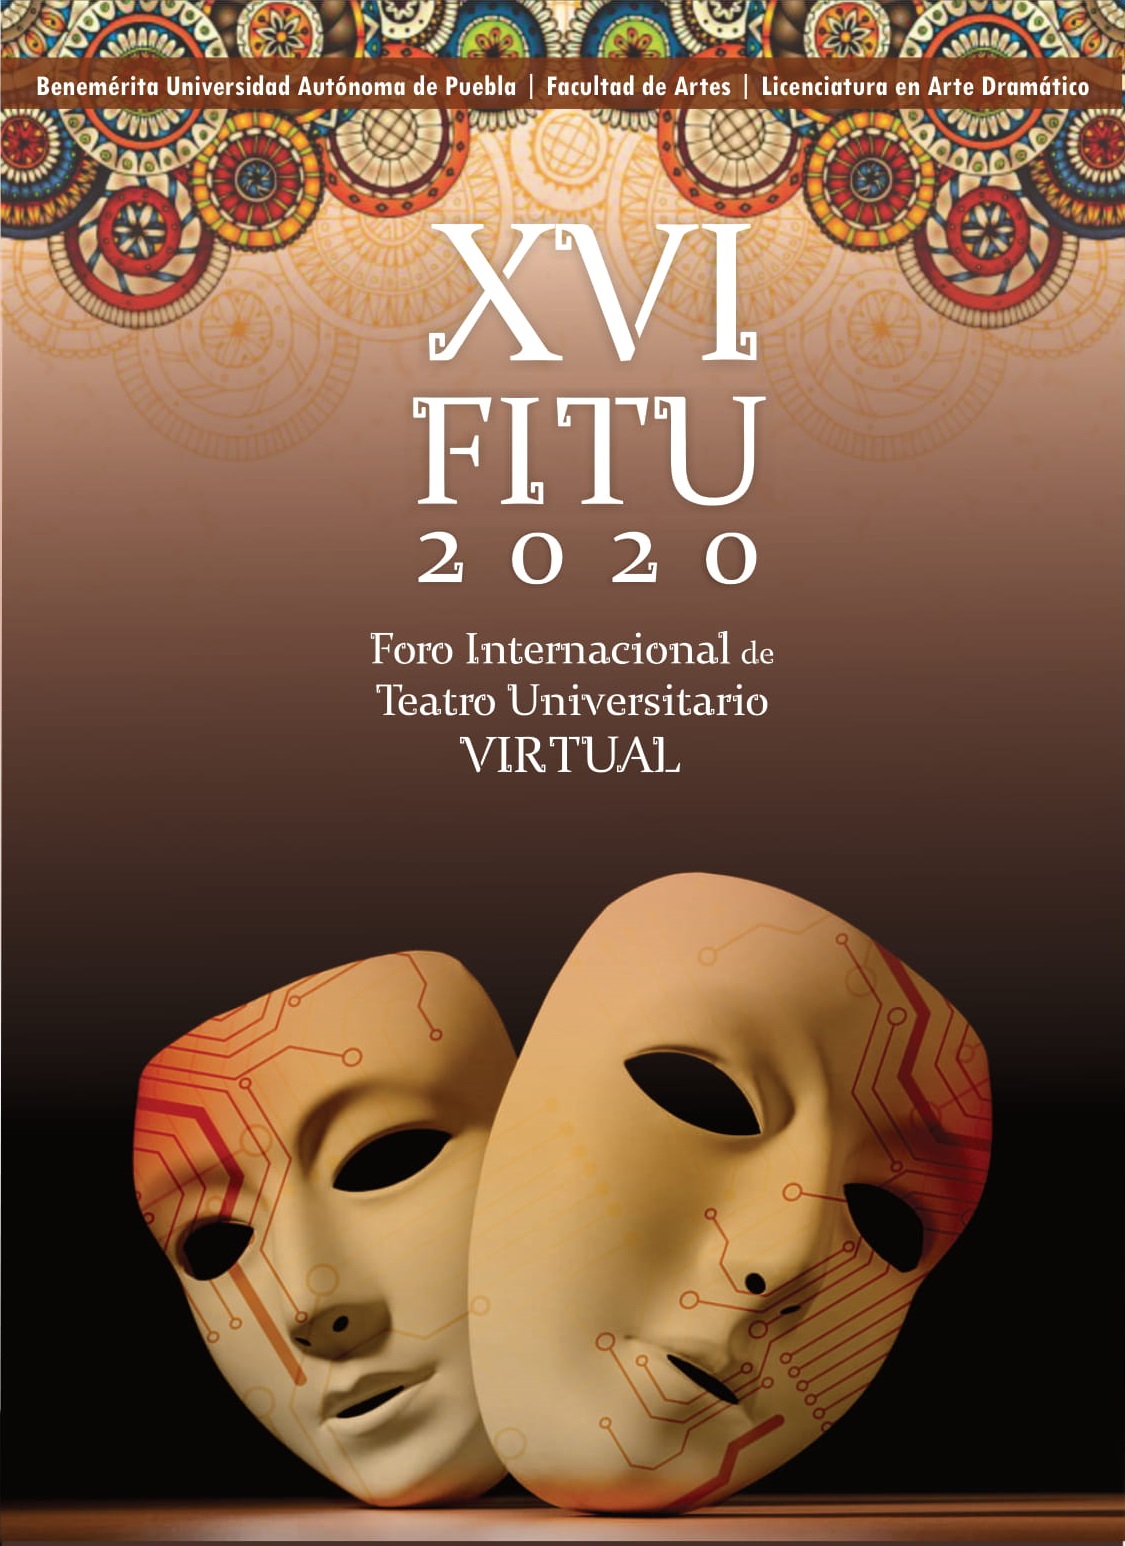 Foro Internacional de Teatro Universitario Virtual en Puebla